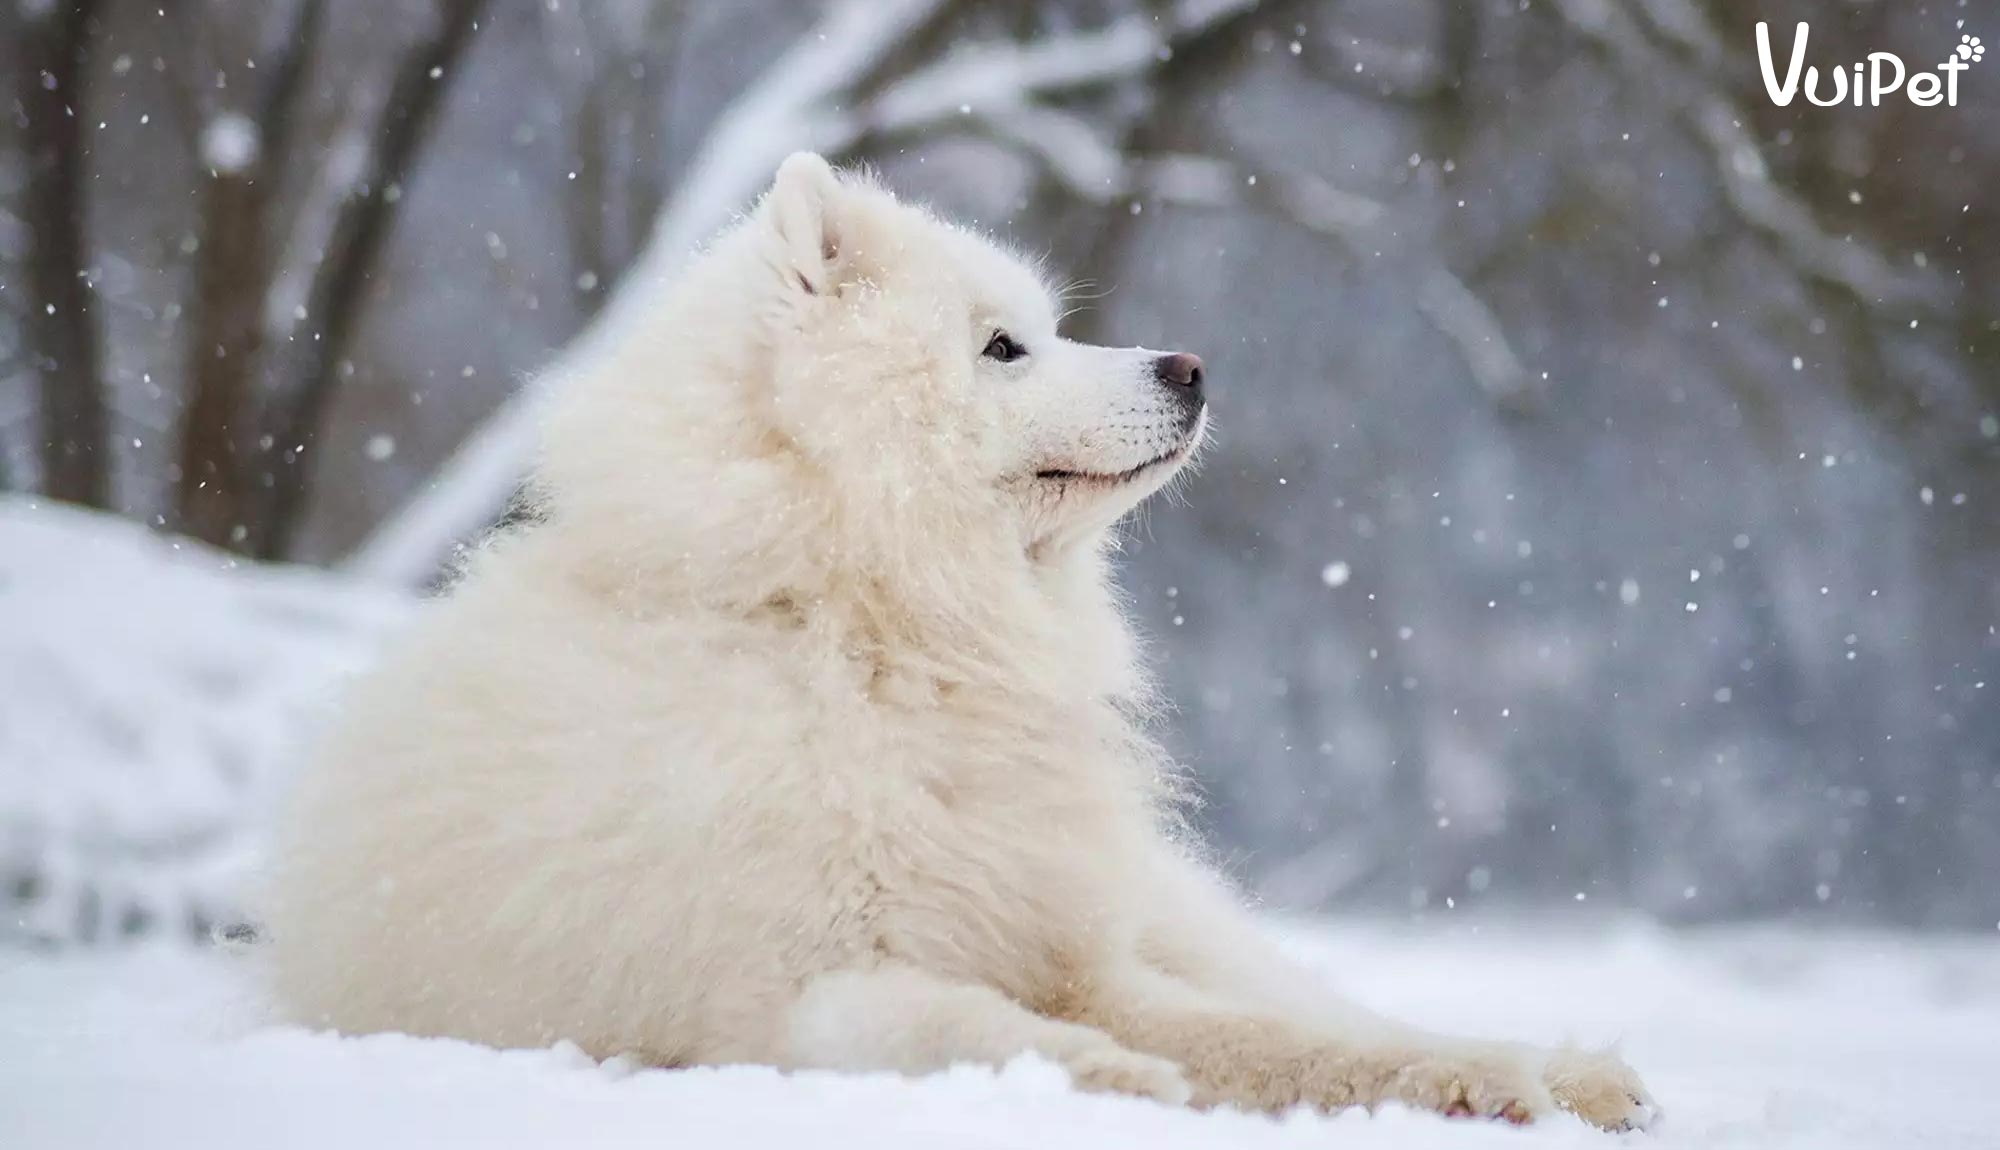 Chó Alaska trắng là một trong những giống chó nổi tiếng nhất trên thế giới. Với bộ lông trắng muốt và khuôn mặt đáng yêu, họ đã thu hút tình yêu của rất nhiều người. Để có được cái nhìn rõ nét hơn về giống chó Alaska trắng, hãy xem hình ảnh đầy yêu thương của chúng tôi.